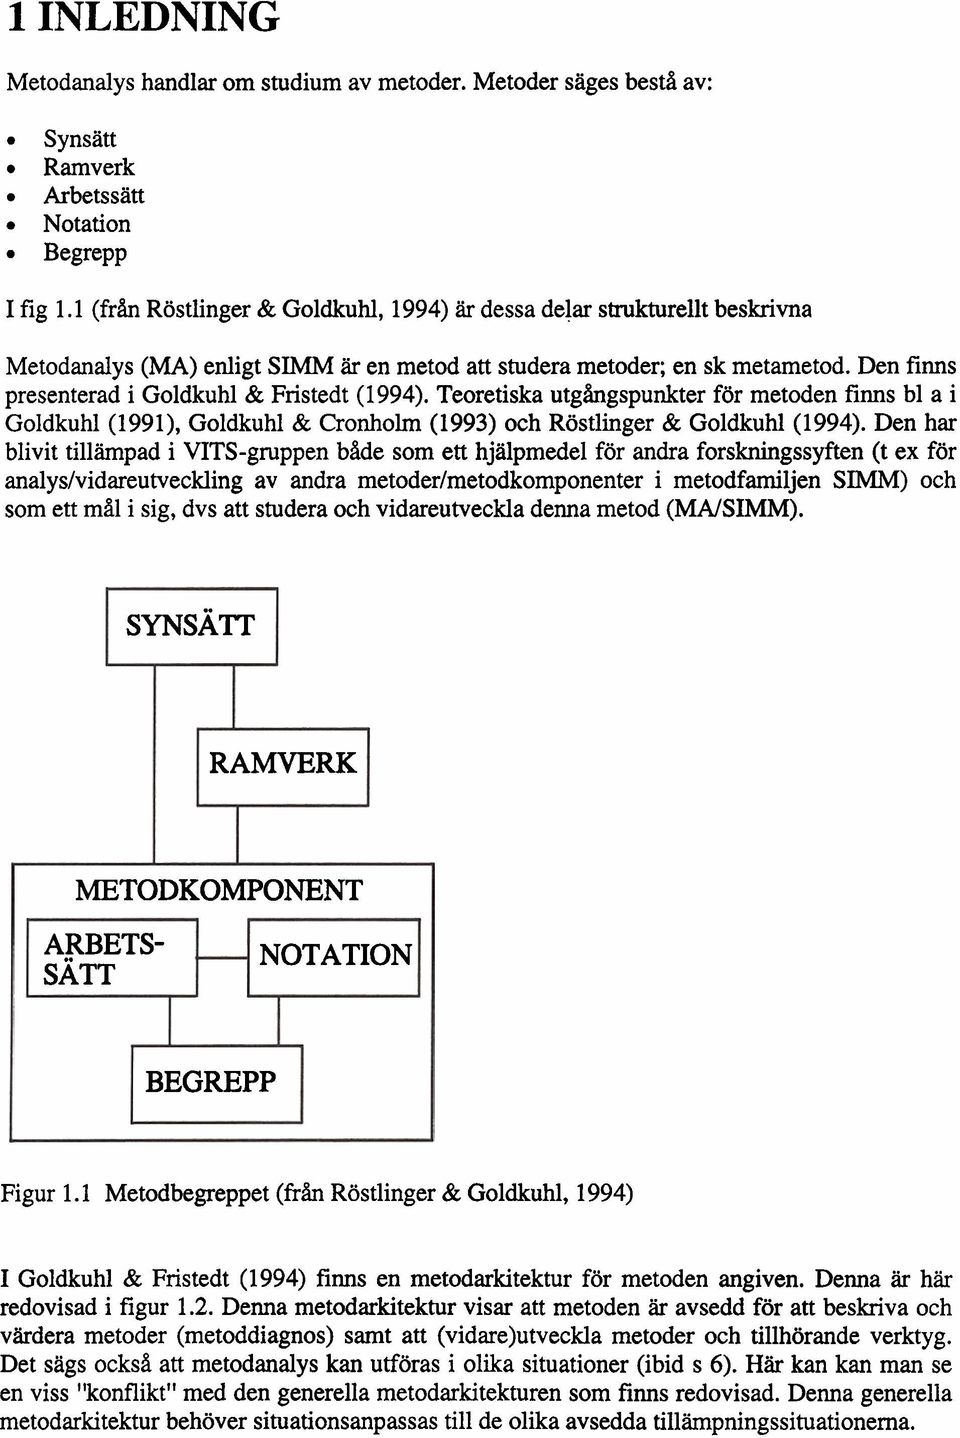 Den finns presenterad i Goldkuhl & Fnstedt (1994). Teoretiska utgångspunkter för metoden finns bl a i Goldkuhl (1991), Goldkuhl & Cronholrn (1993) och Röstlinger & Goldkuhl (1994).